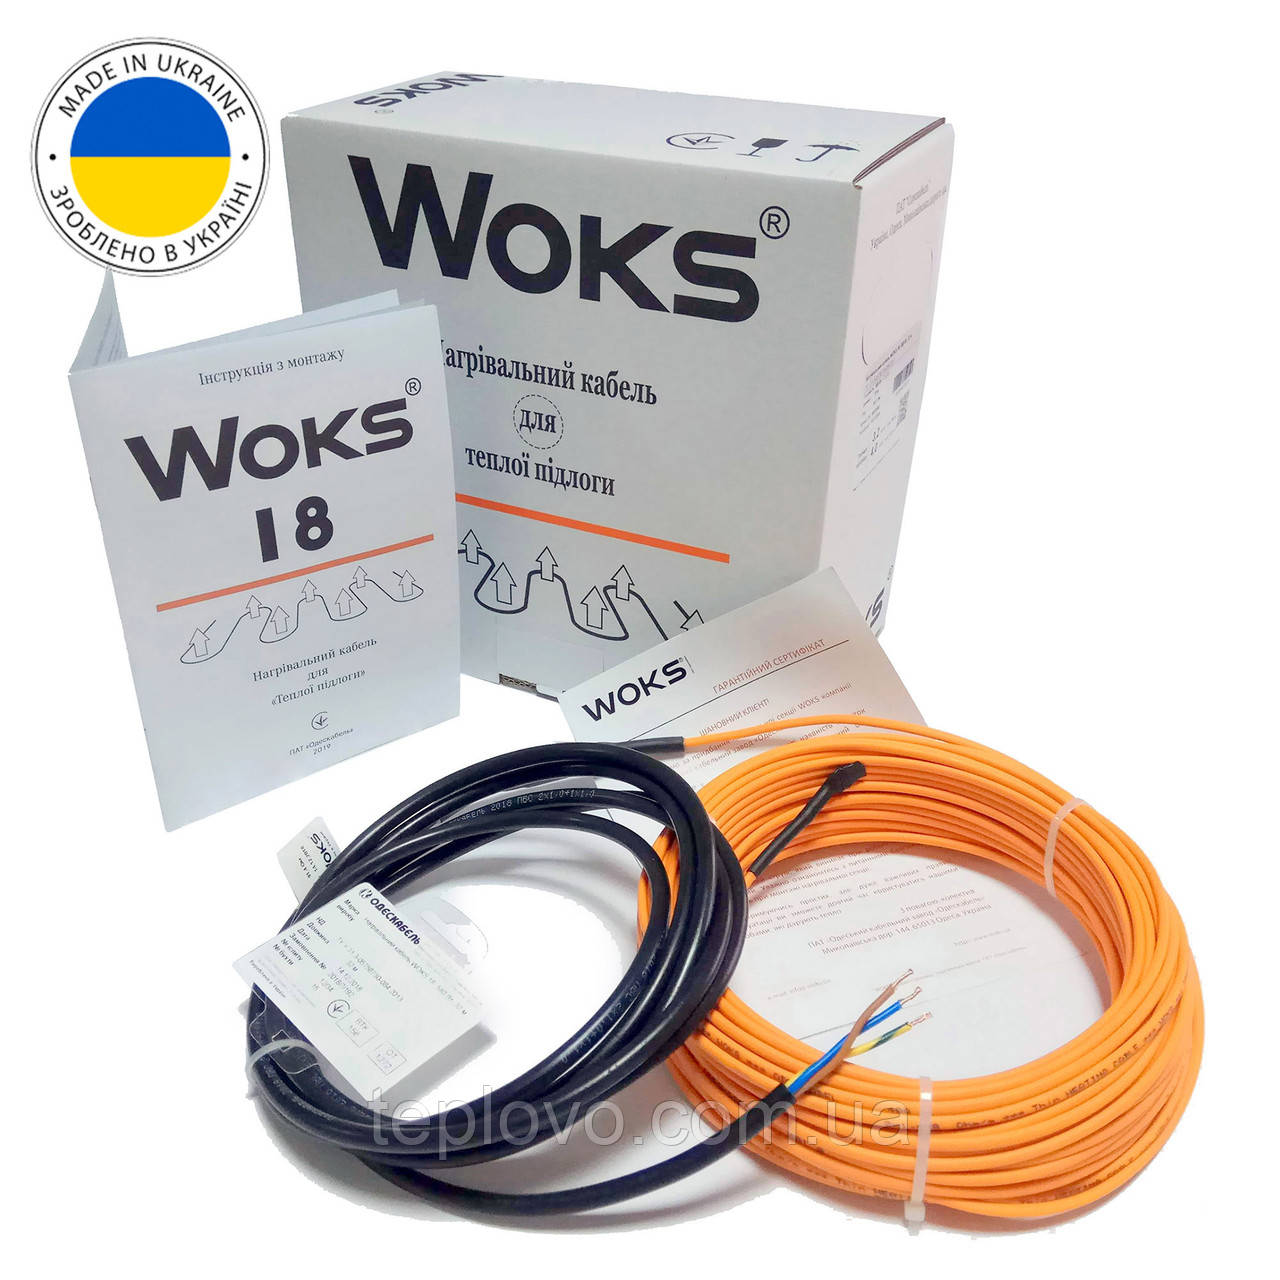 Нагрівальний кабель Woks 18, 100 Вт (0,5 - 0,7 м2), електрична тепла підлога